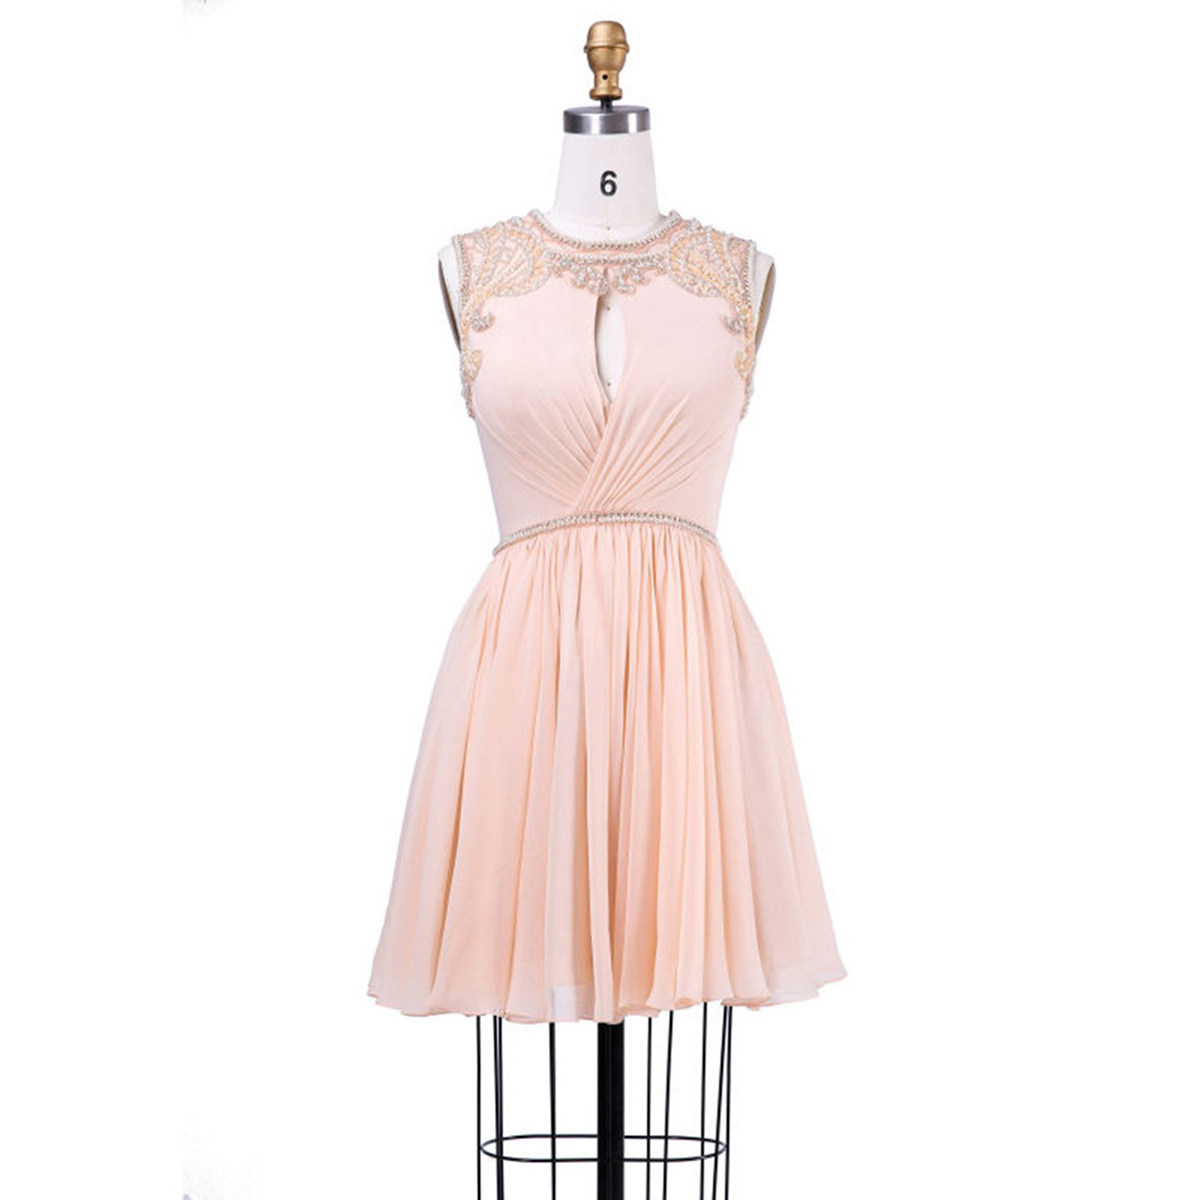 Jewel Neck Short Prom Dress, Charming Chiffon A-line Prom Dress, Sweet ...